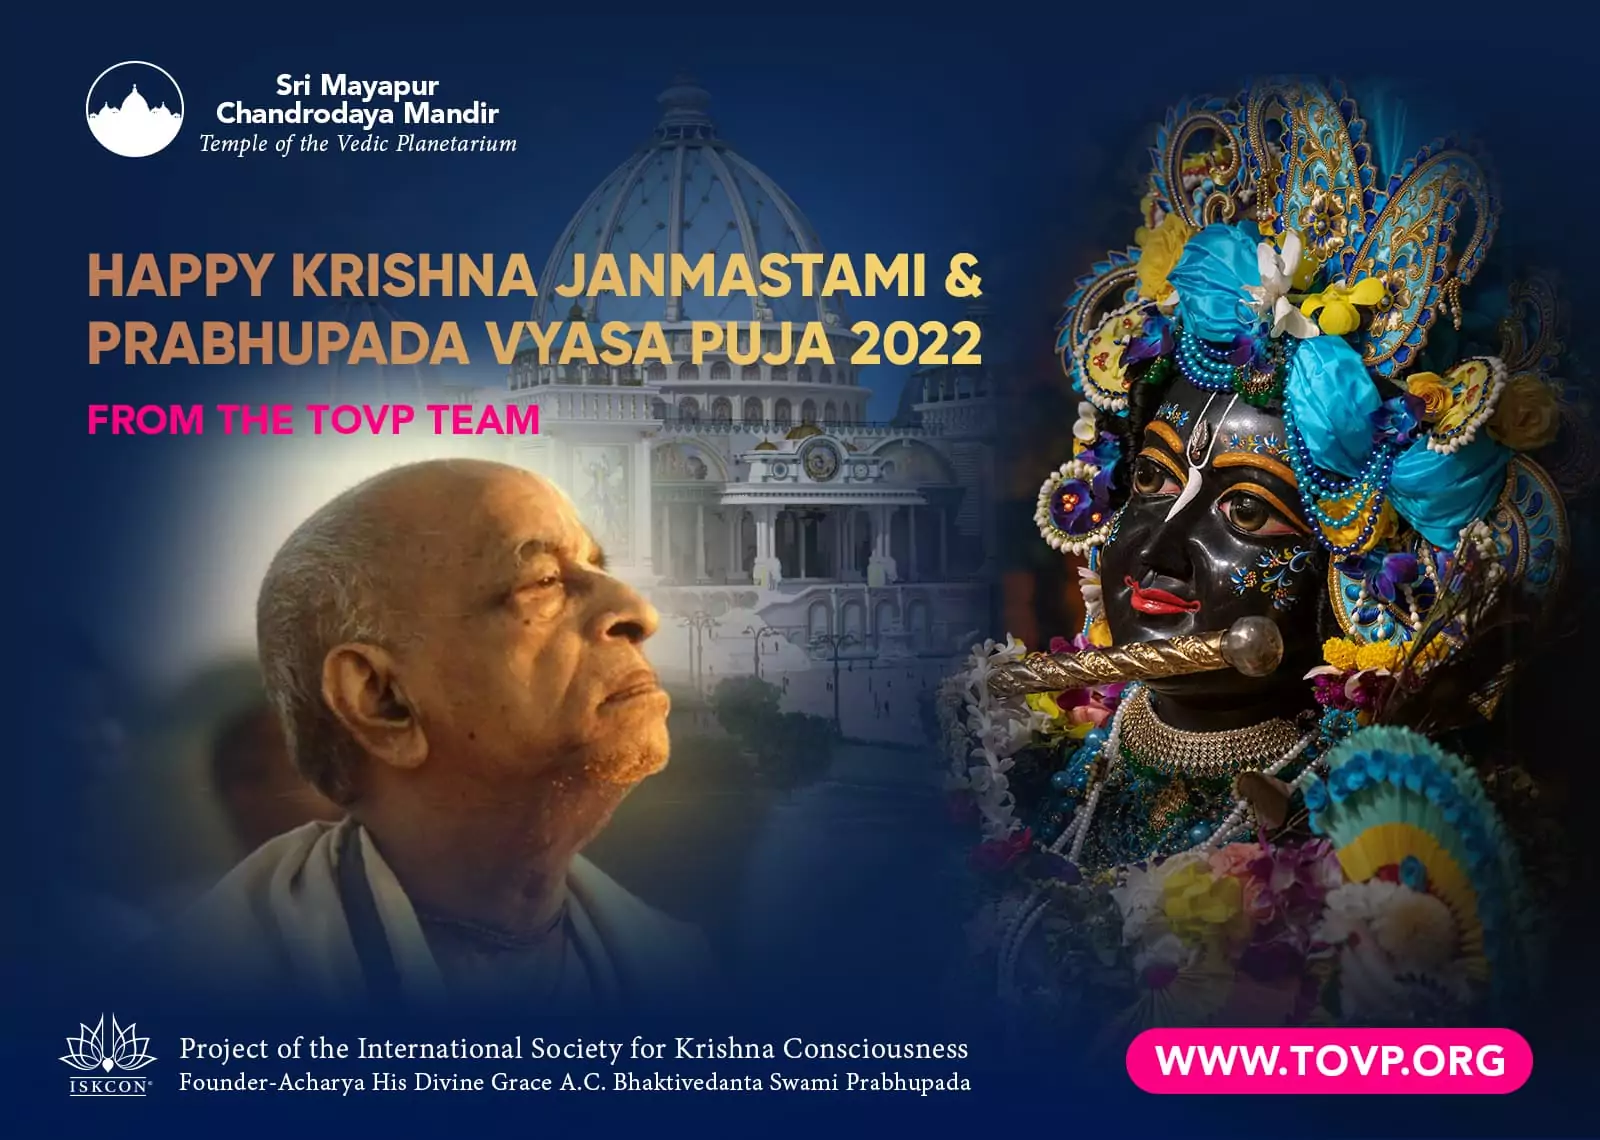 来自 TOVP 团队的 Krishna Janmastami 和 Prabhupada Vyasa Puja 2022 快乐